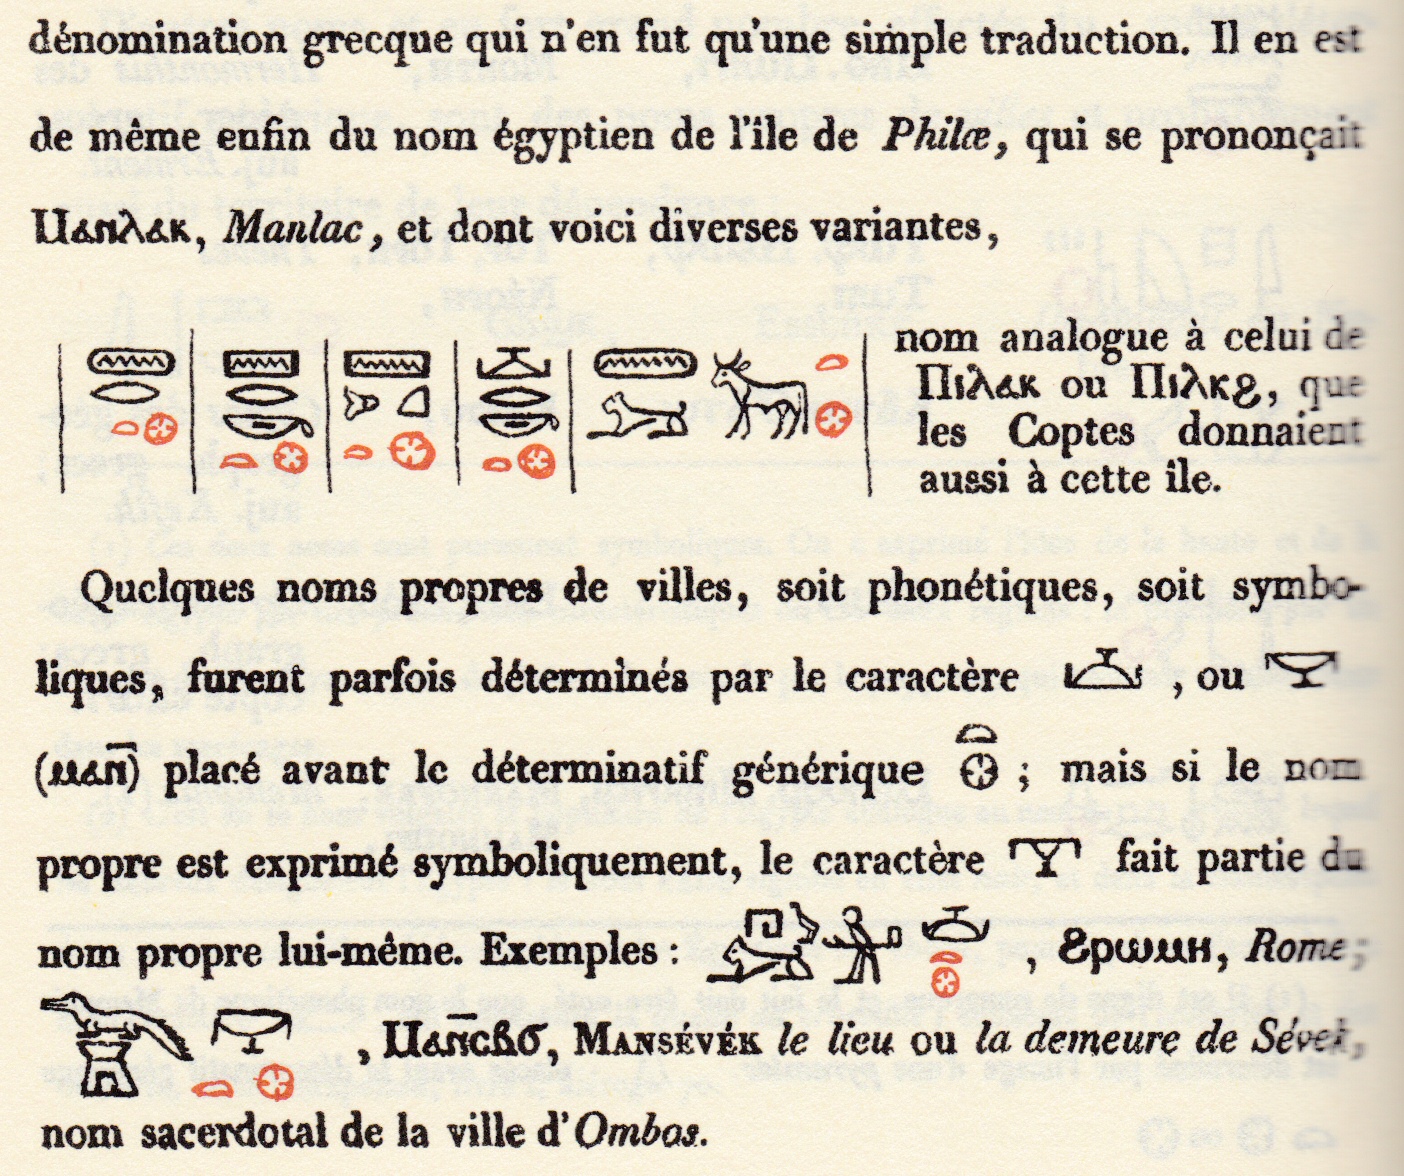 Champollion, Grammaire égyptienne / page en couleur